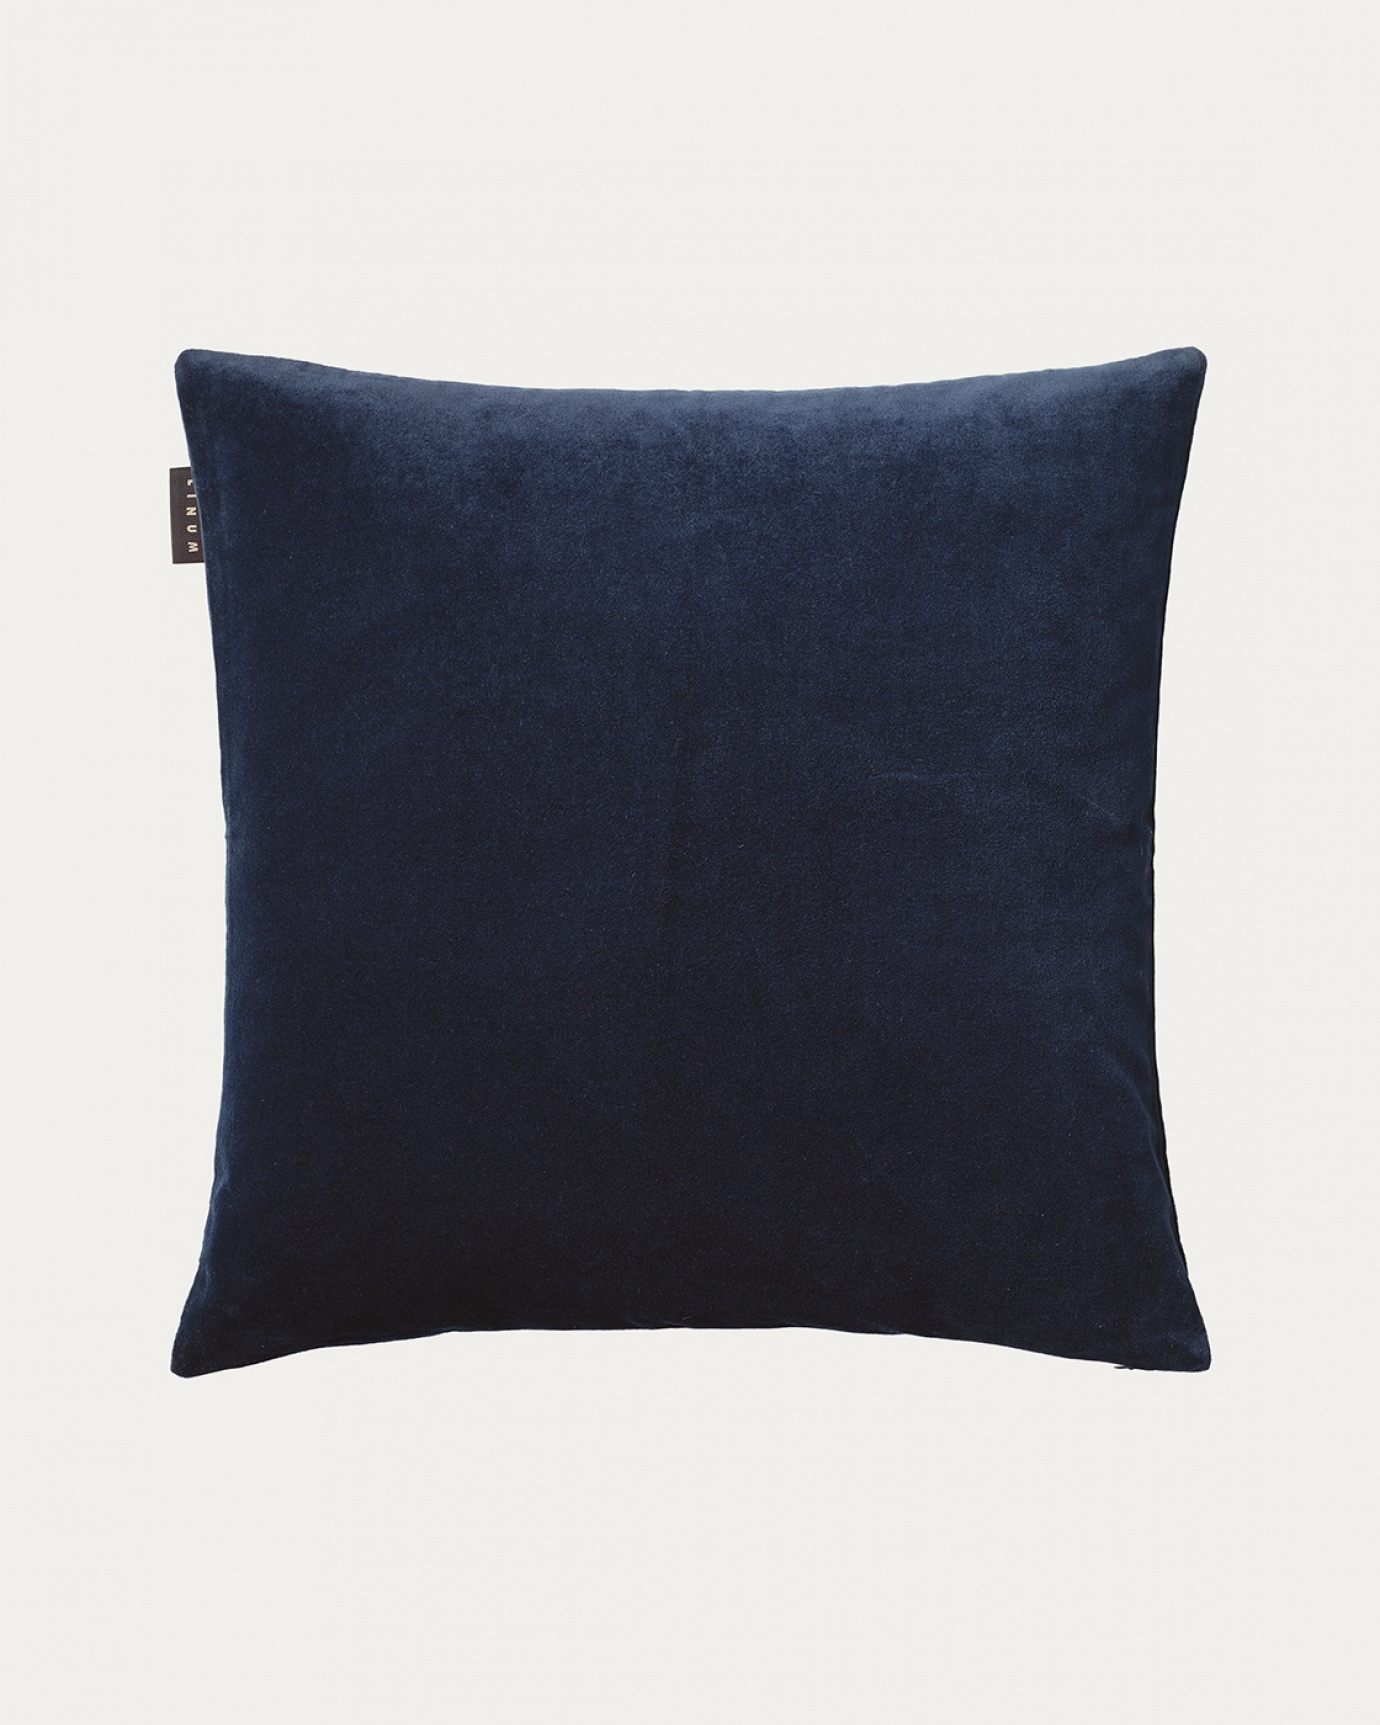 Image du produit housse de coussin PAOLO bleu outre mer en doux velours de coton de LINUM DESIGN. Taille 50 x 50 cm.